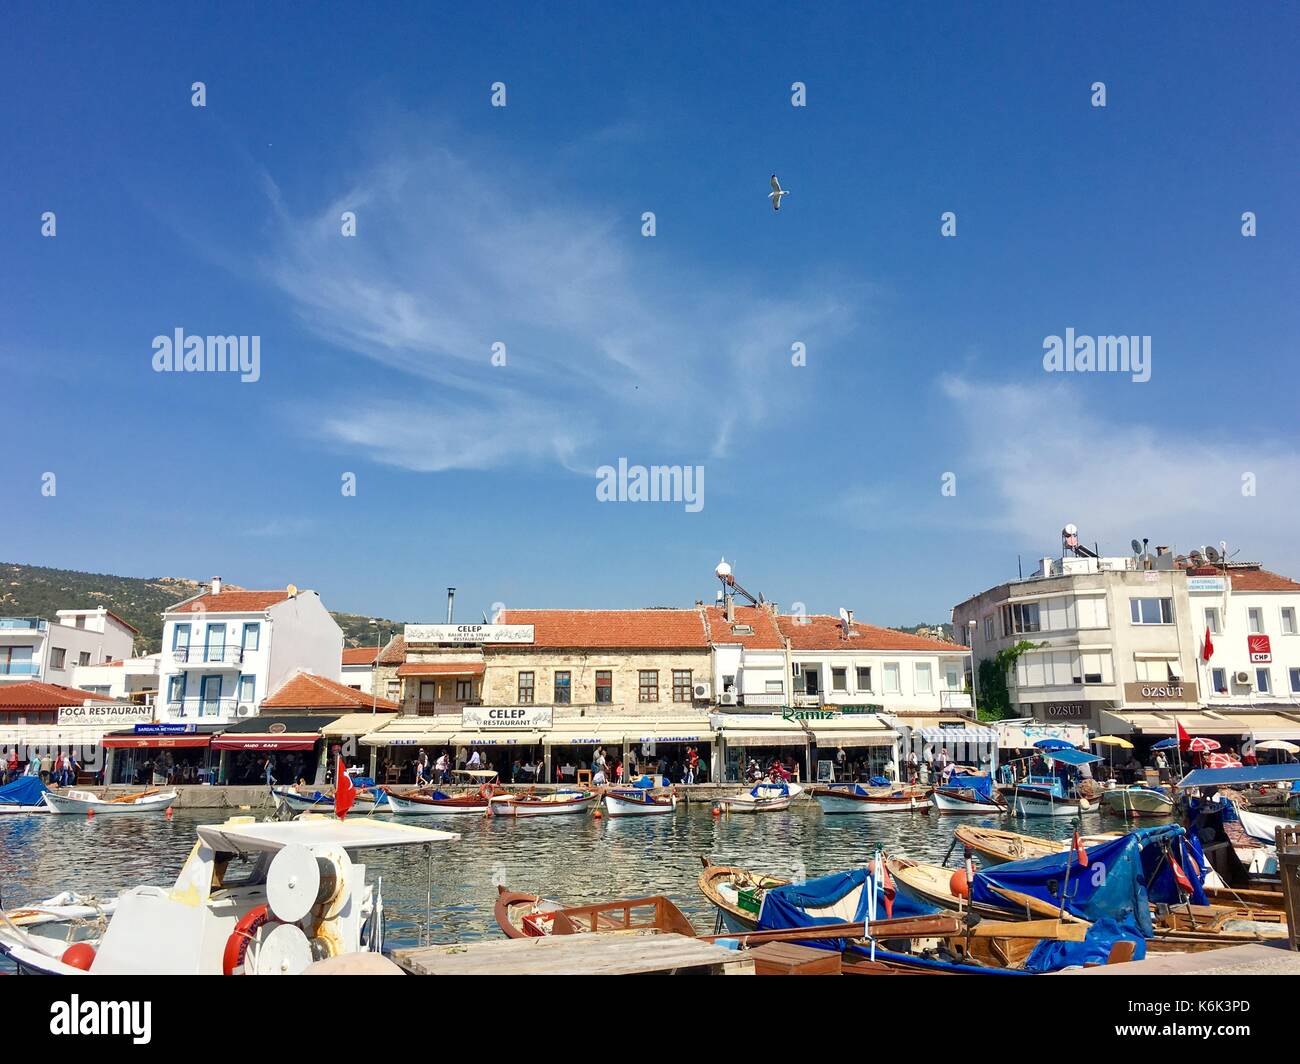 Foça, Turquía - abril 29, 2017 : puerto y vista del viejo puerto de embarcación de foca, Izmir. Debido a los sellos flotando en el mar de la ciudad, el asentamiento fue nombrado Foto de stock